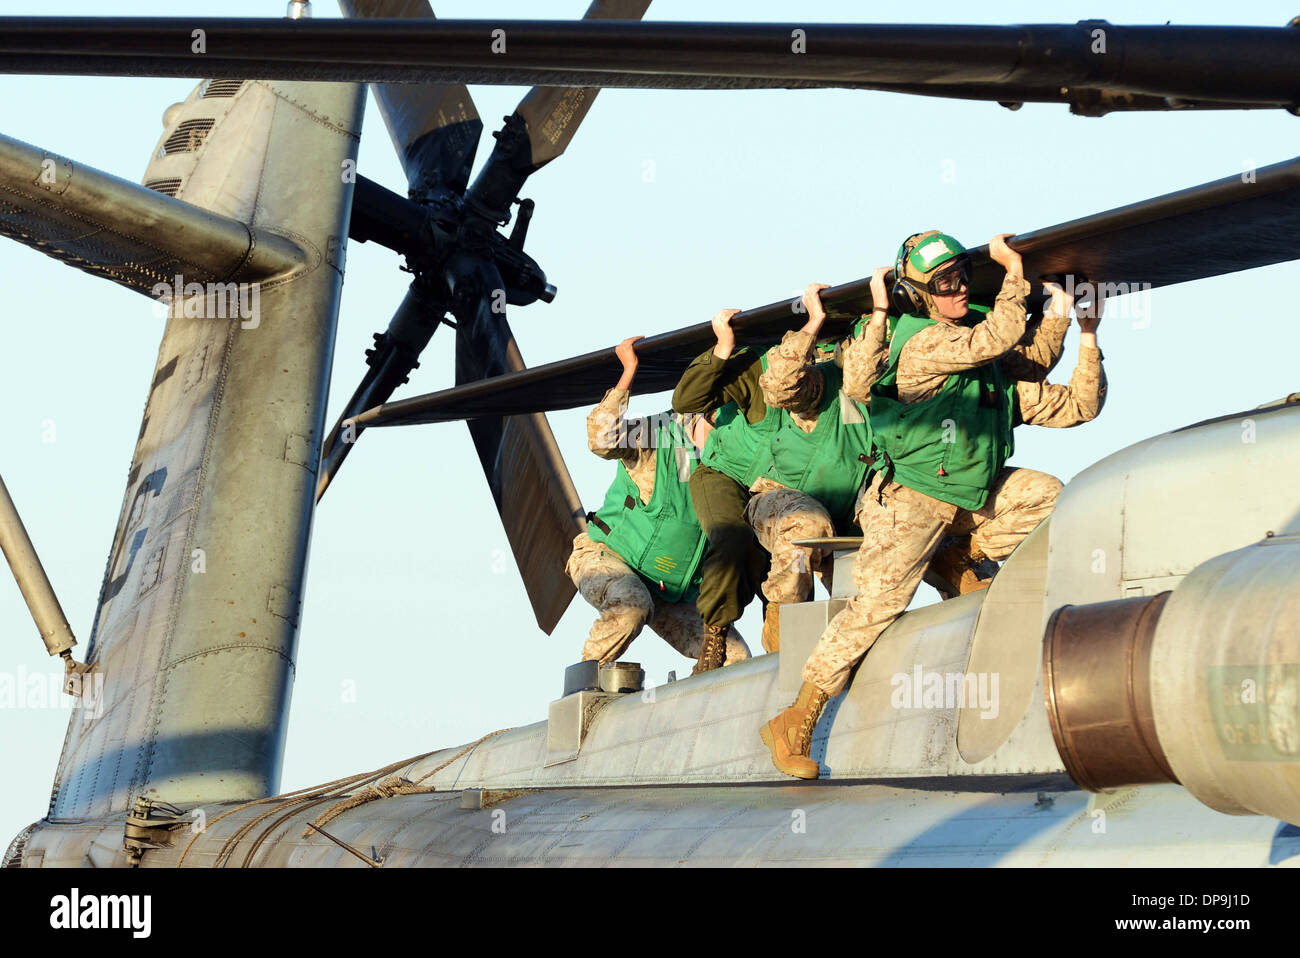 Marines alinear las palas del rotor de un tipo CH-53E Super Stallion helicóptero para estiba Foto de stock